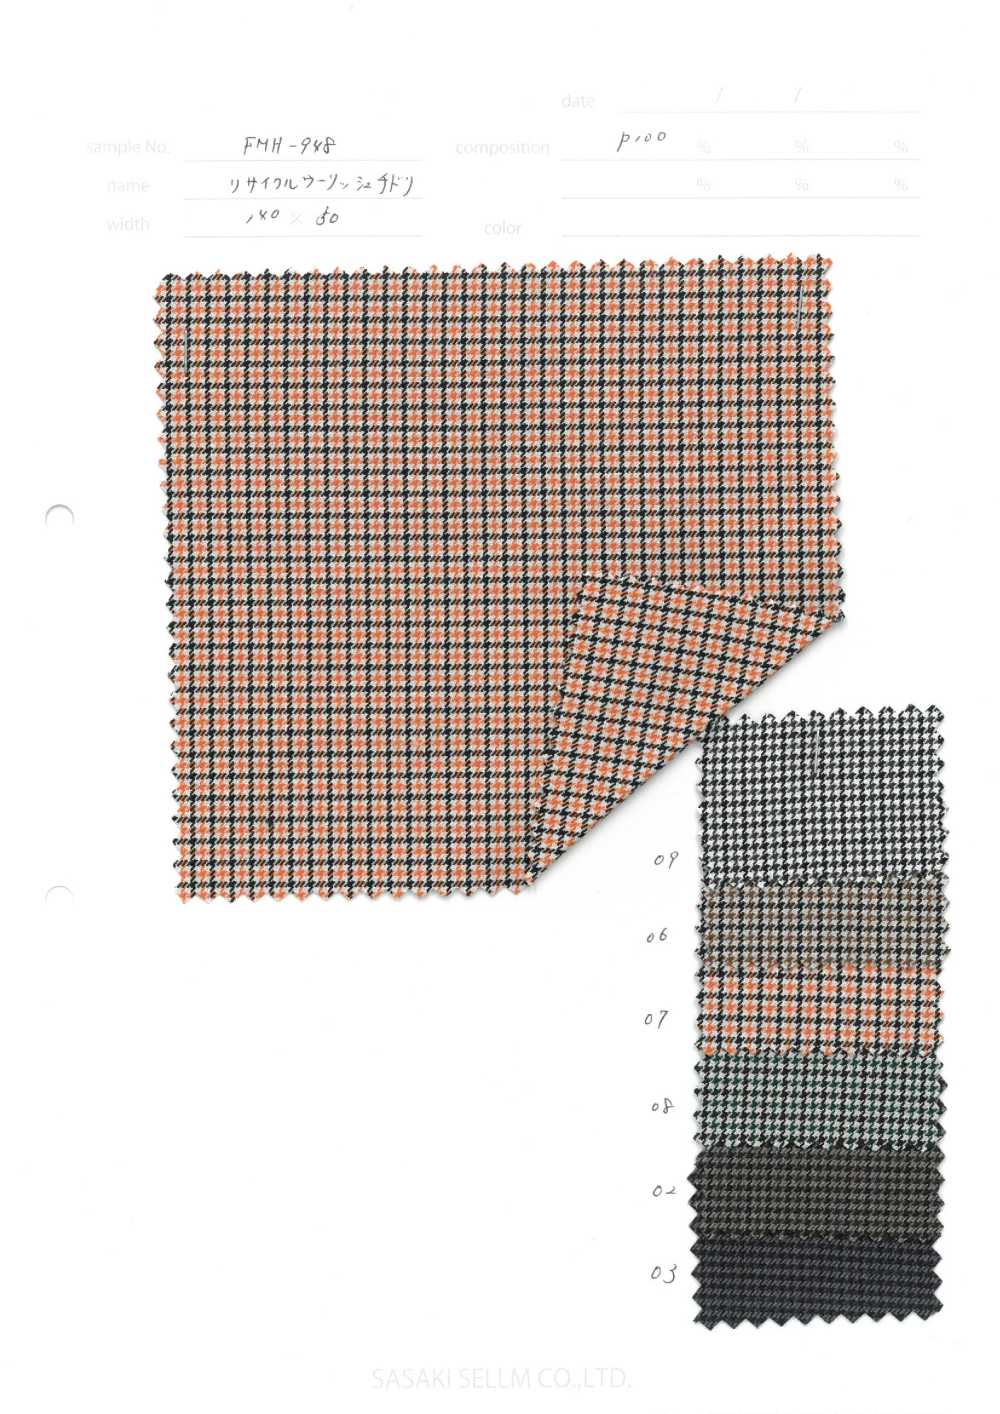 FMH-948 Tarambola Lã Reciclada[Têxtil / Tecido] SASAKISELLM